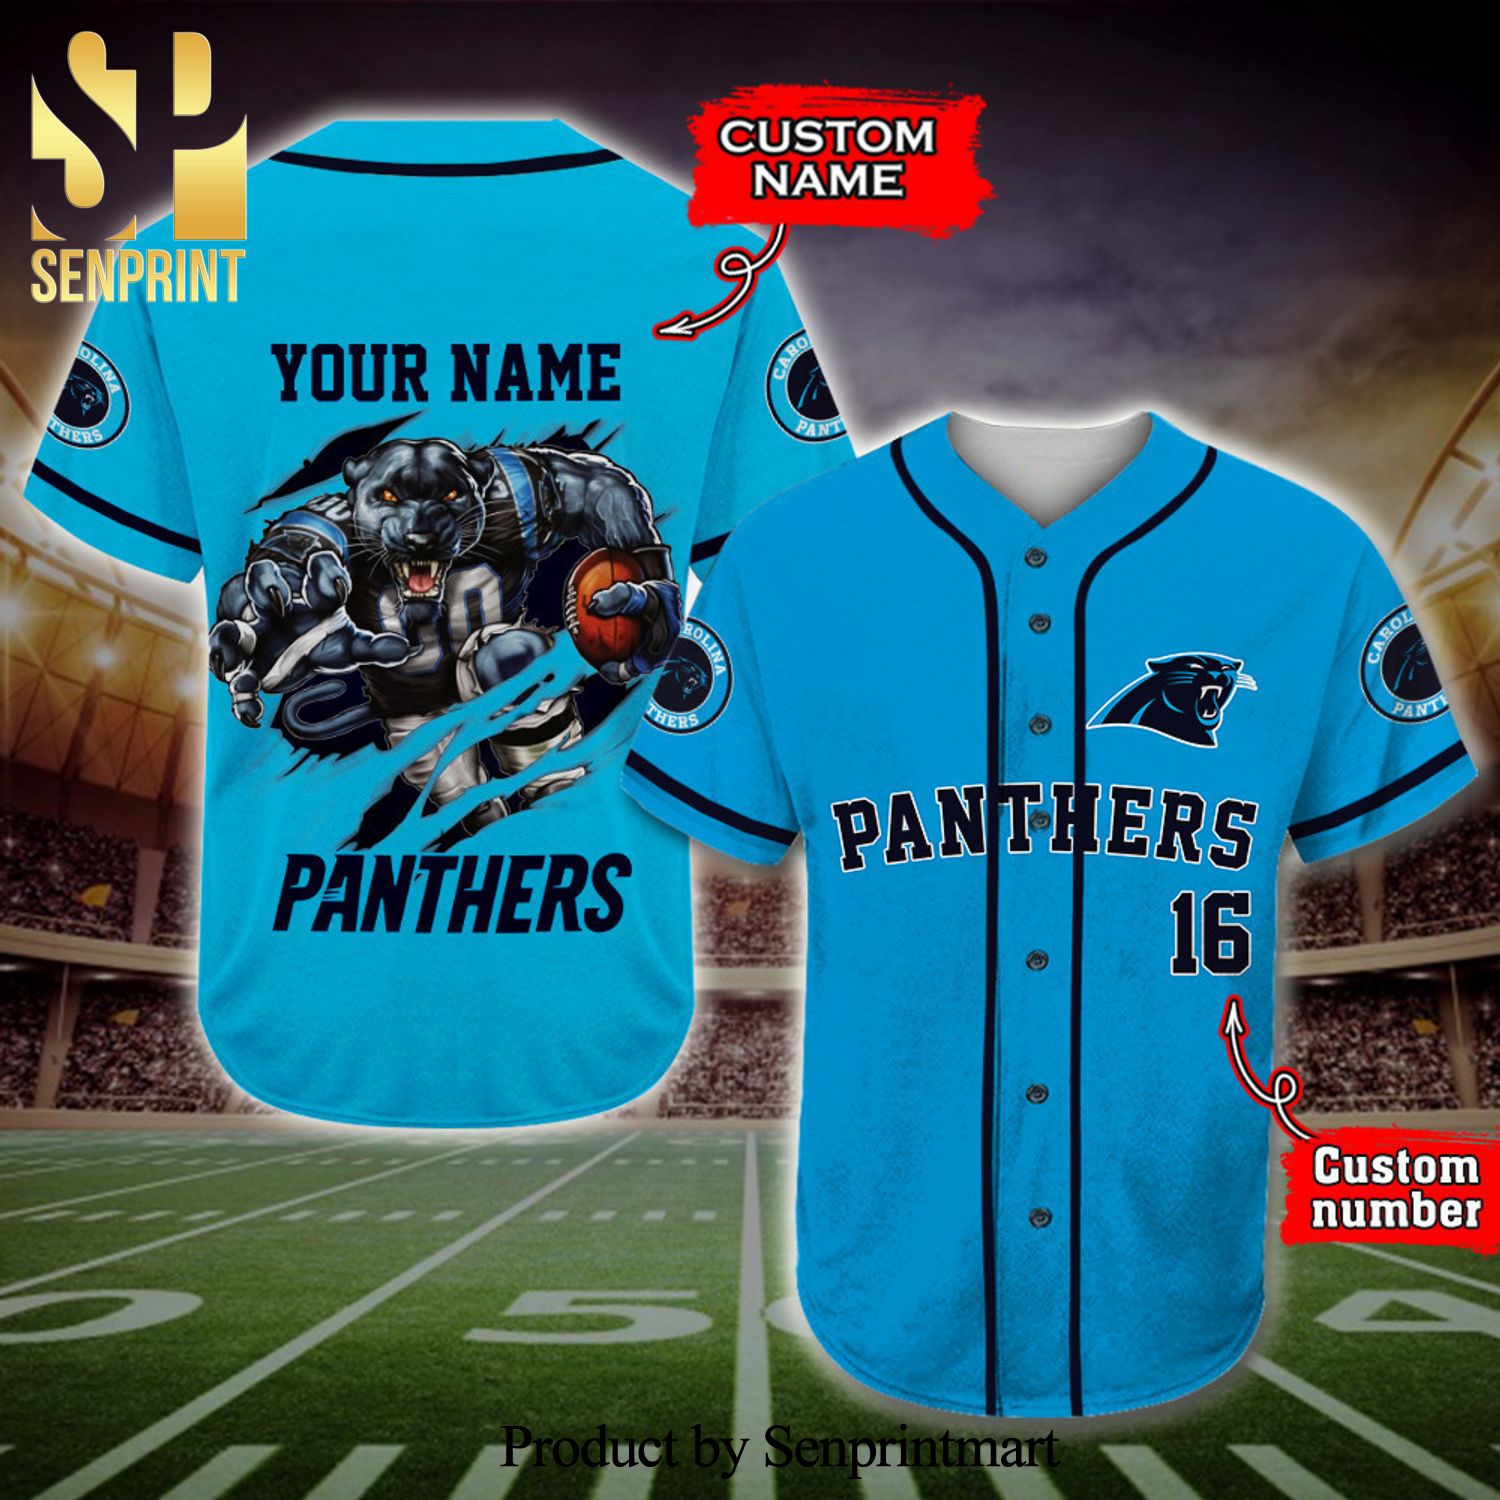 Official Carolina Panthers Gear, Panthers Jerseys, Store, Panthers Apparel